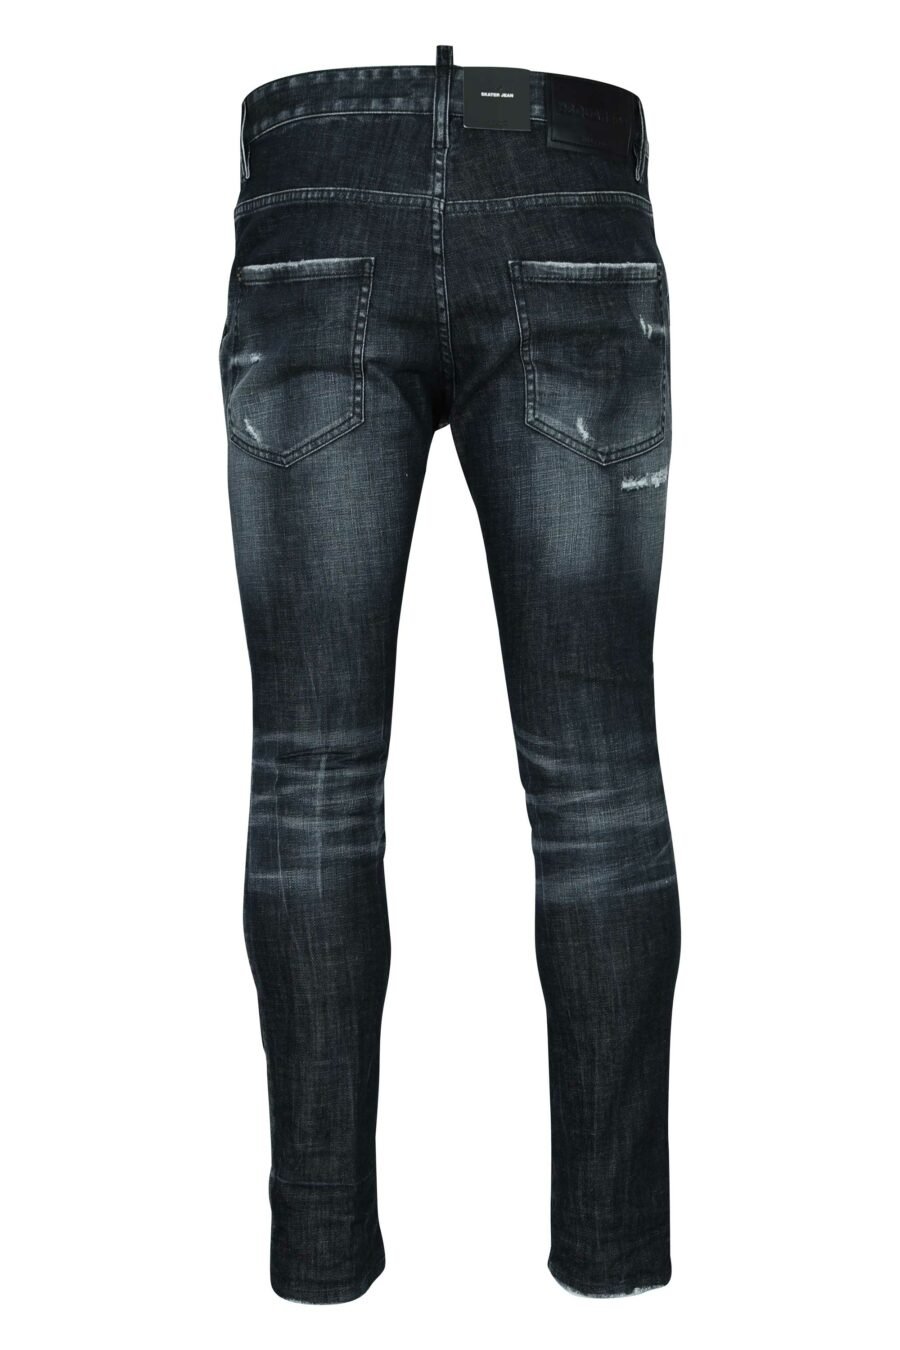 Schwarze "Skater-Jeans" mit Aufnäher und halb zerschlissen - 8054148522018 1